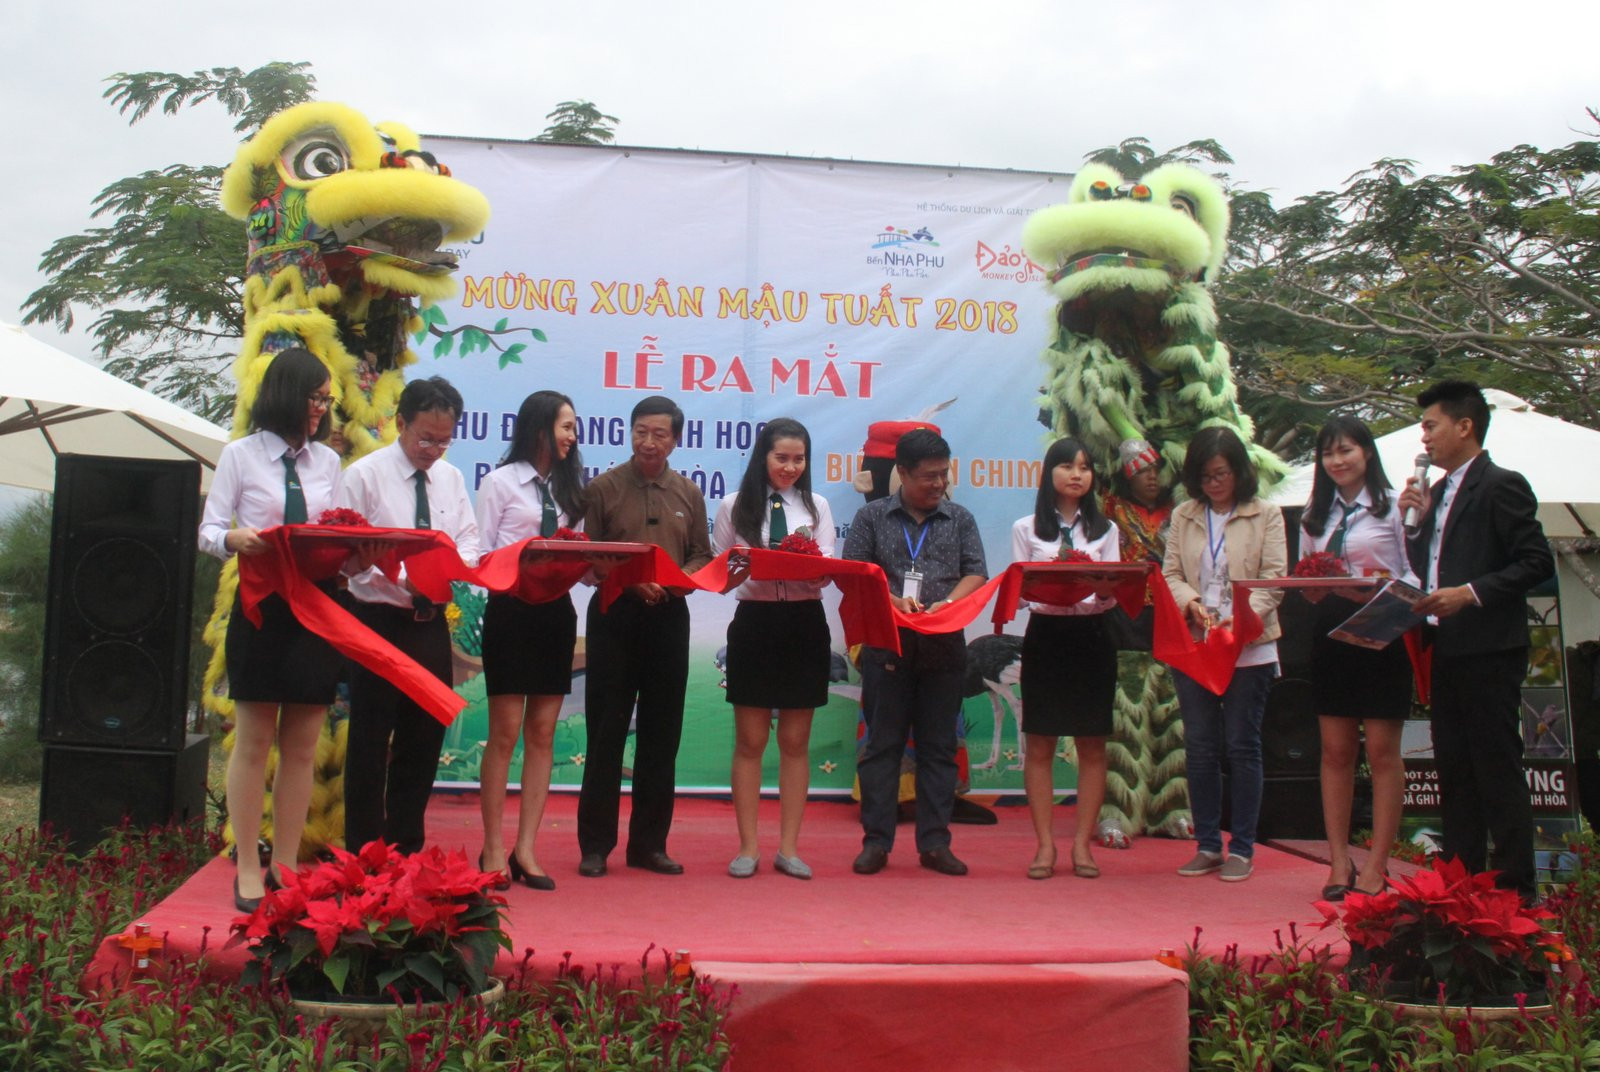  Đại biểu cắt băng khai trương khu đa dạng sinh học rừng Khánh Hòa